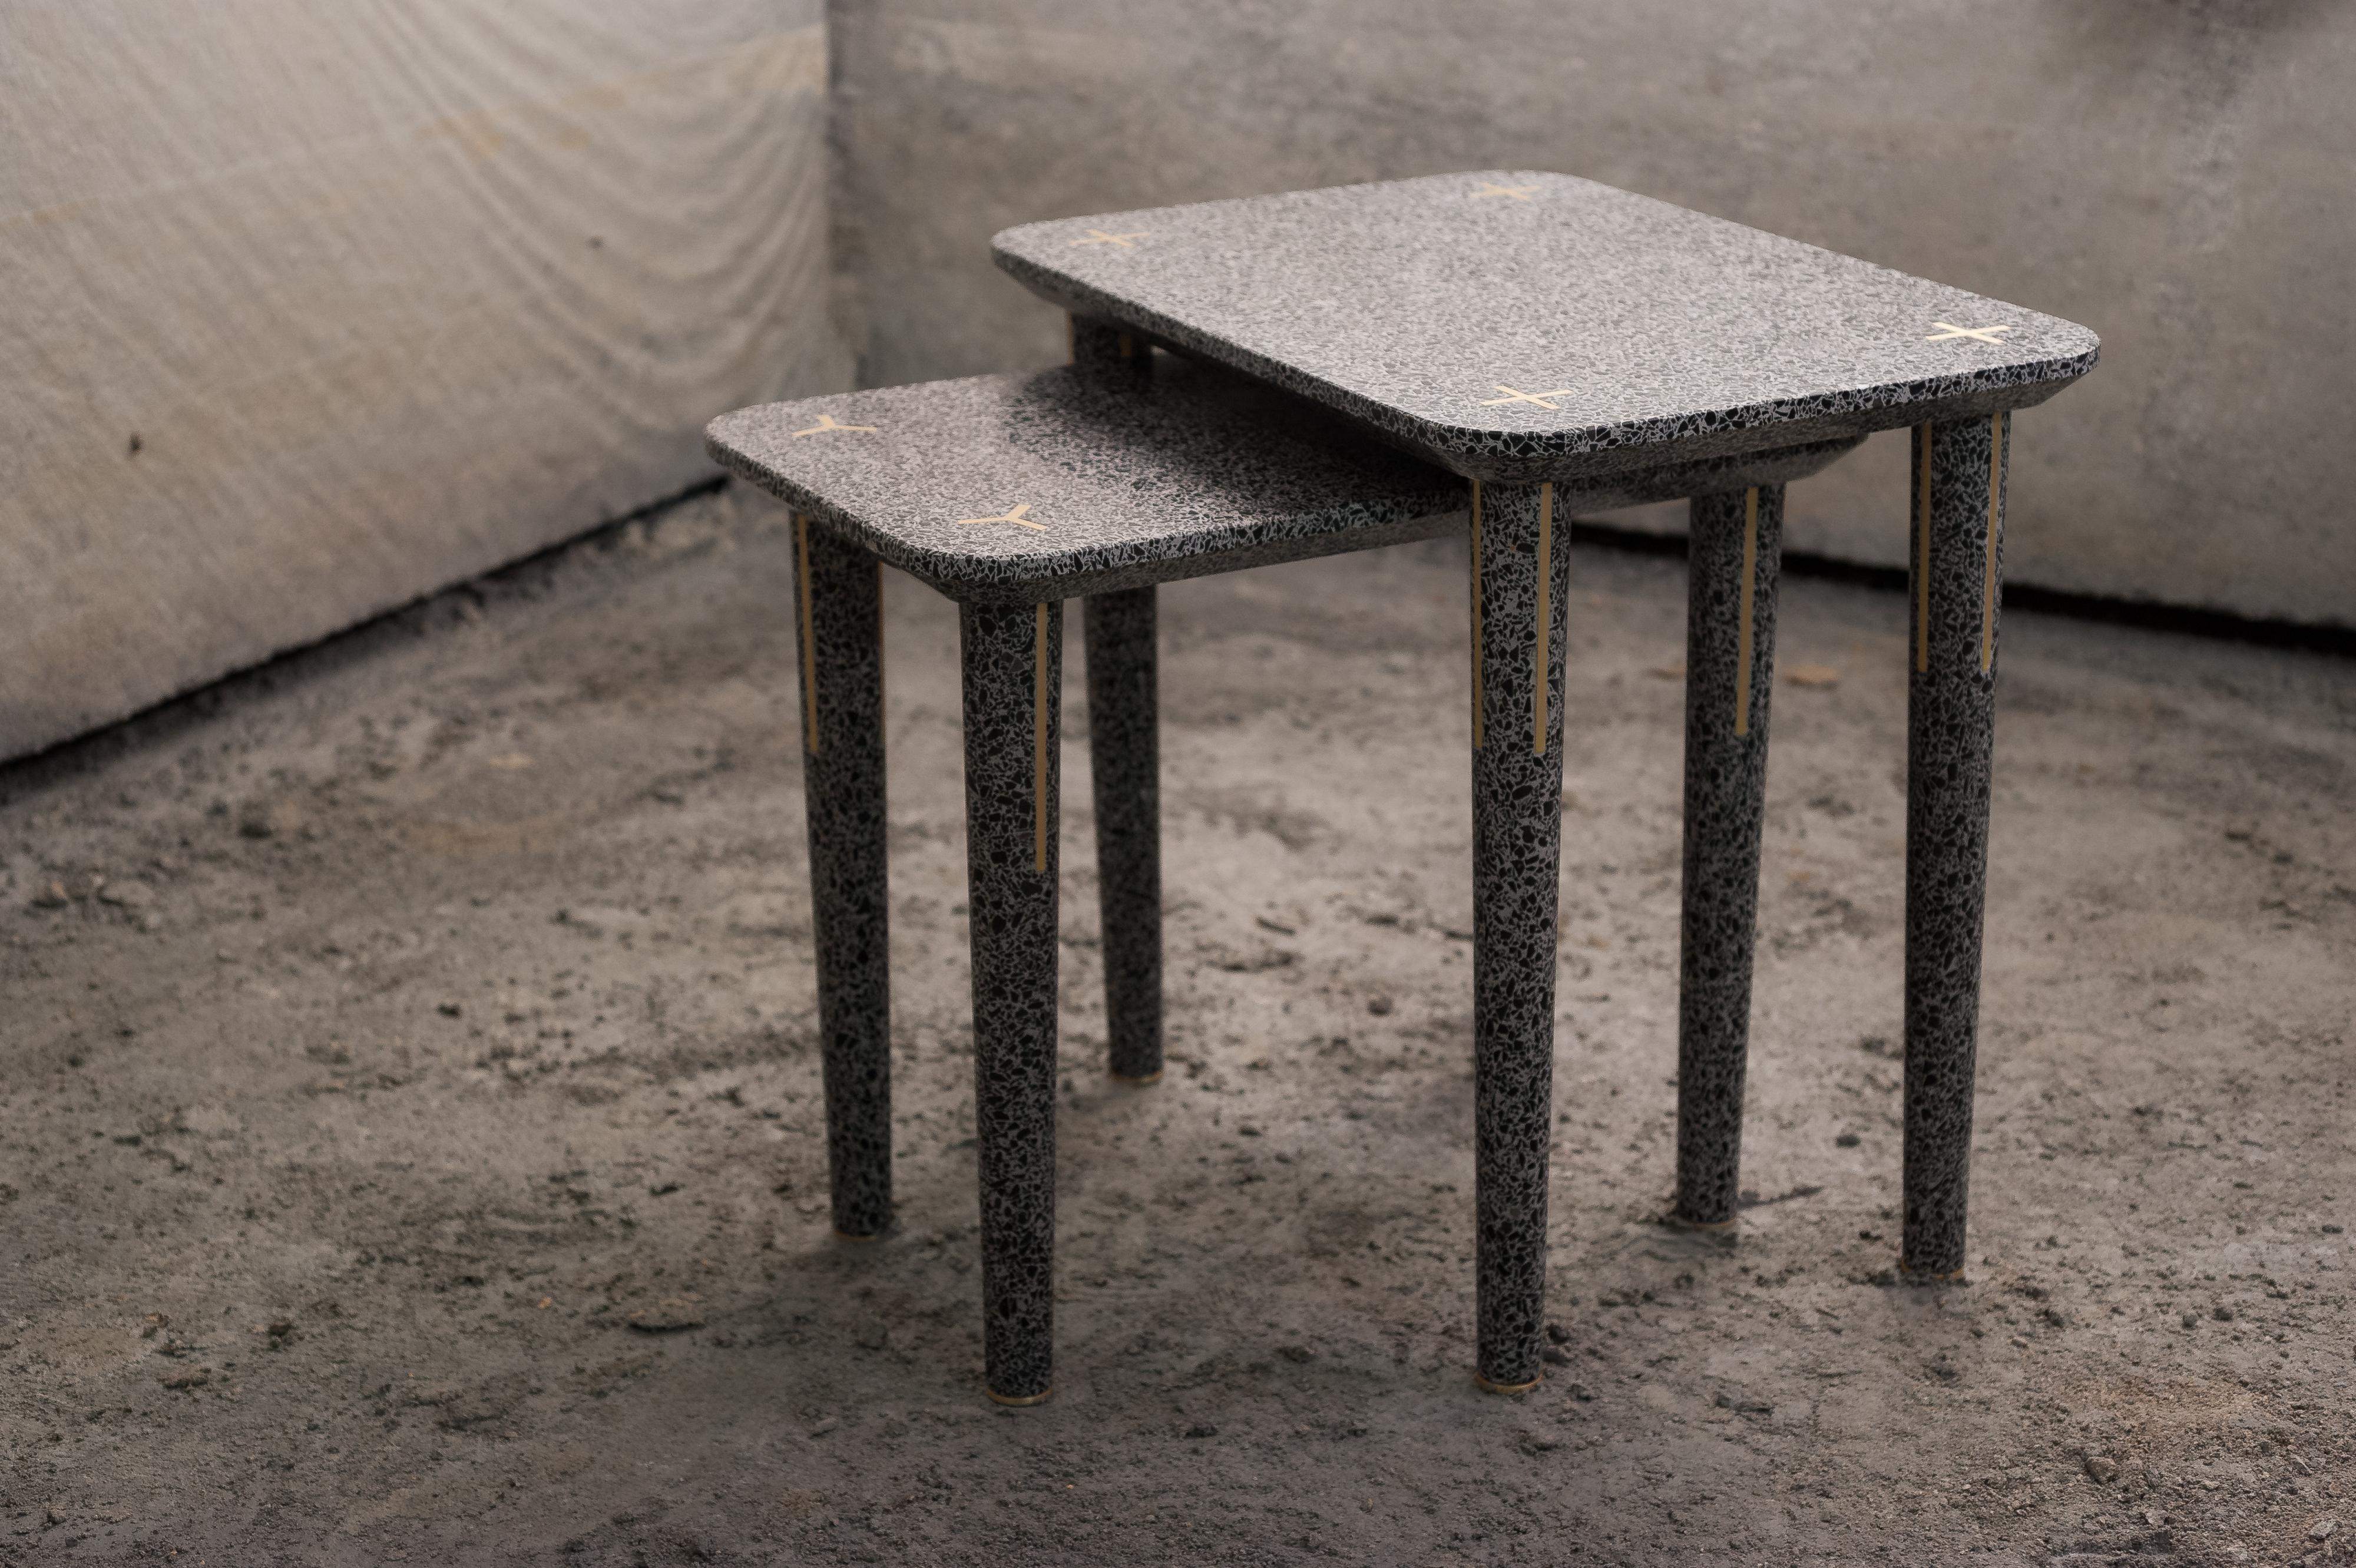 Ce design unique est l'une des deux tables gigognes qui font partie de la collection Flint. Fabriquée en terrazzo, un mélange de ciment et d'éclats de marbre, sa silhouette simple est ornée d'inserts métalliques le long des pieds et sur le dessus